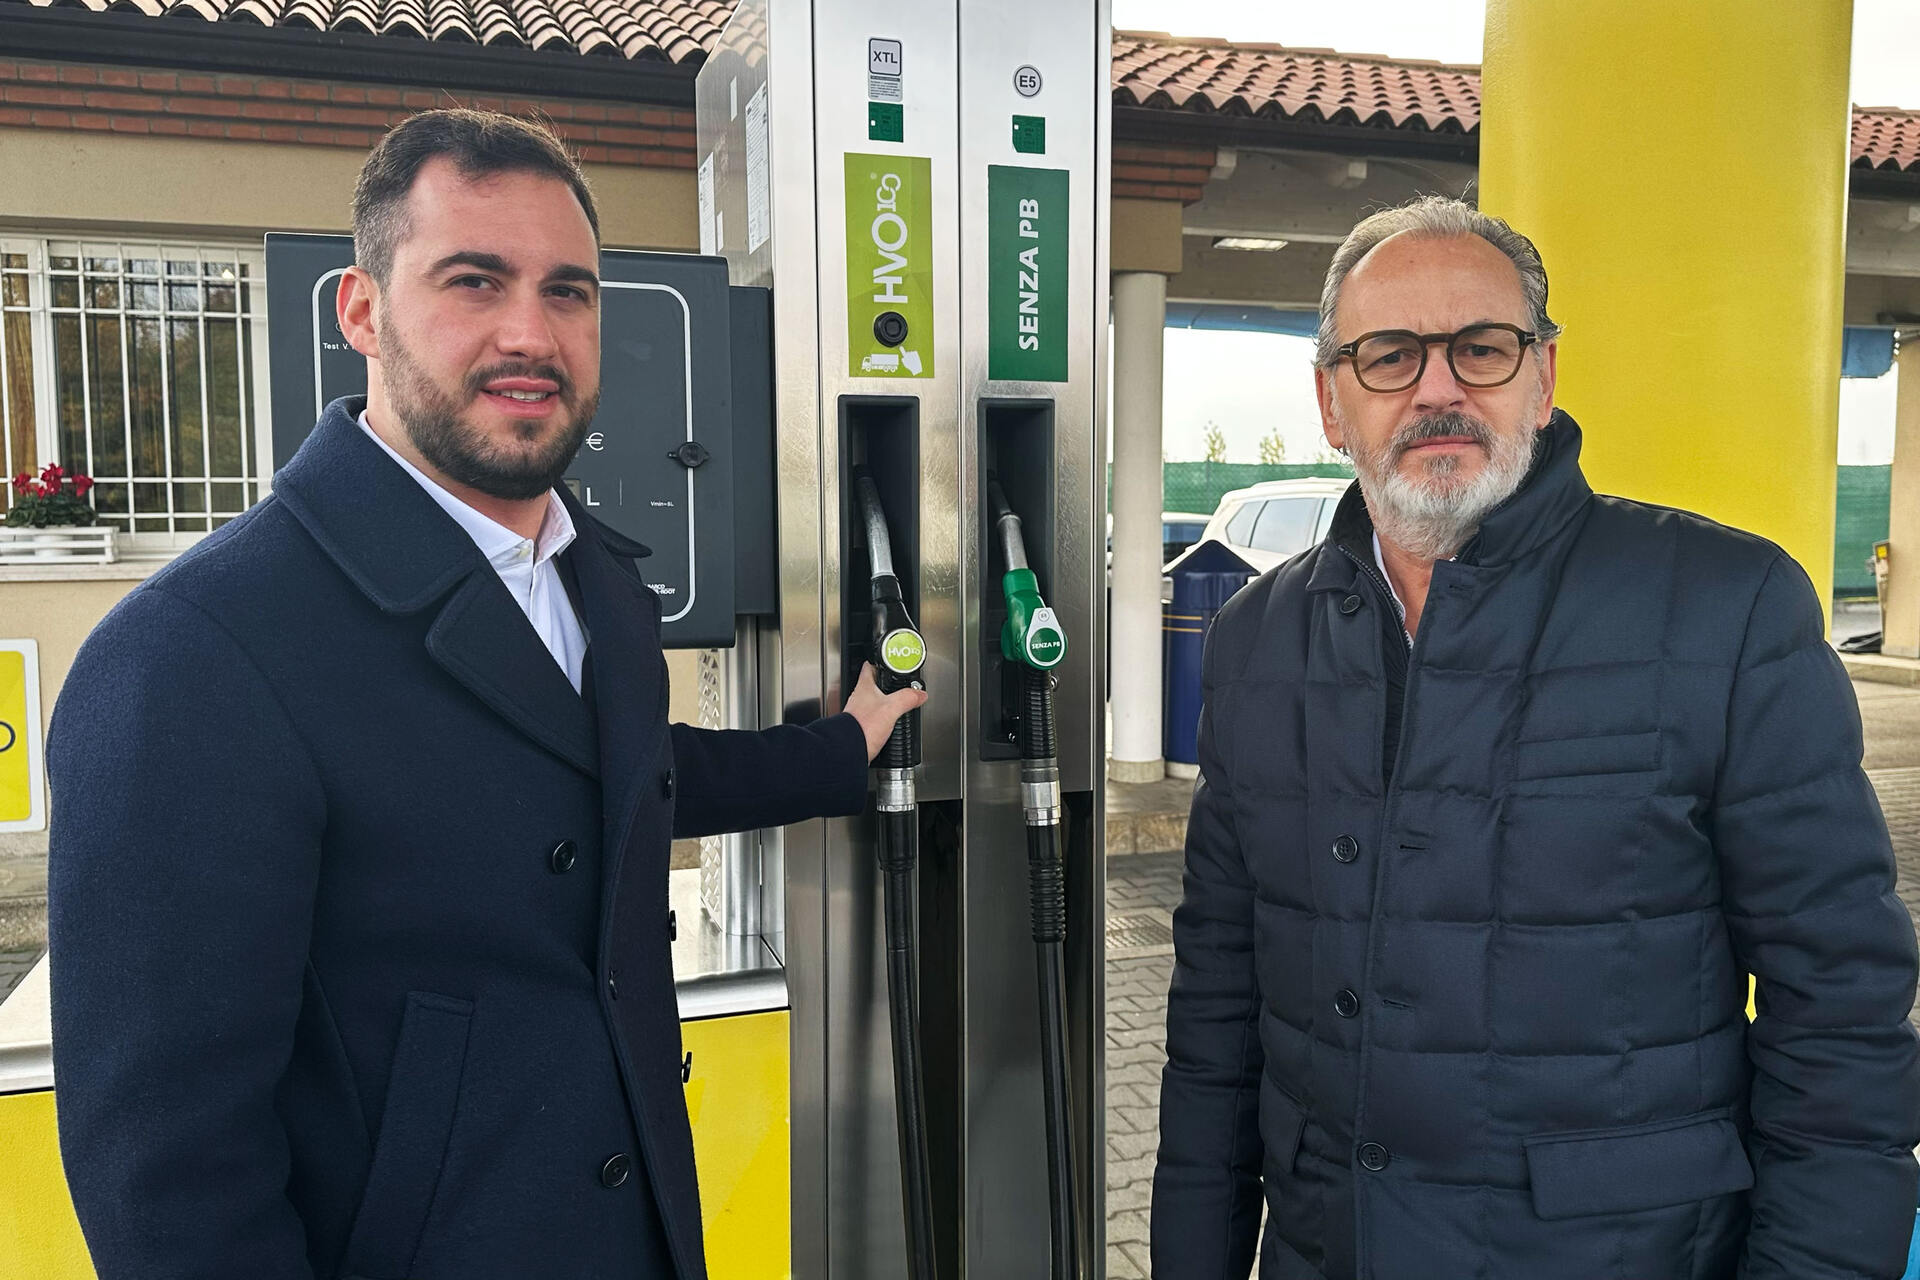 Biodiesel: Nicola Cavatton și Luca Cavatton sunt, respectiv, CEO și șeful HVO100 al Costantin Spa